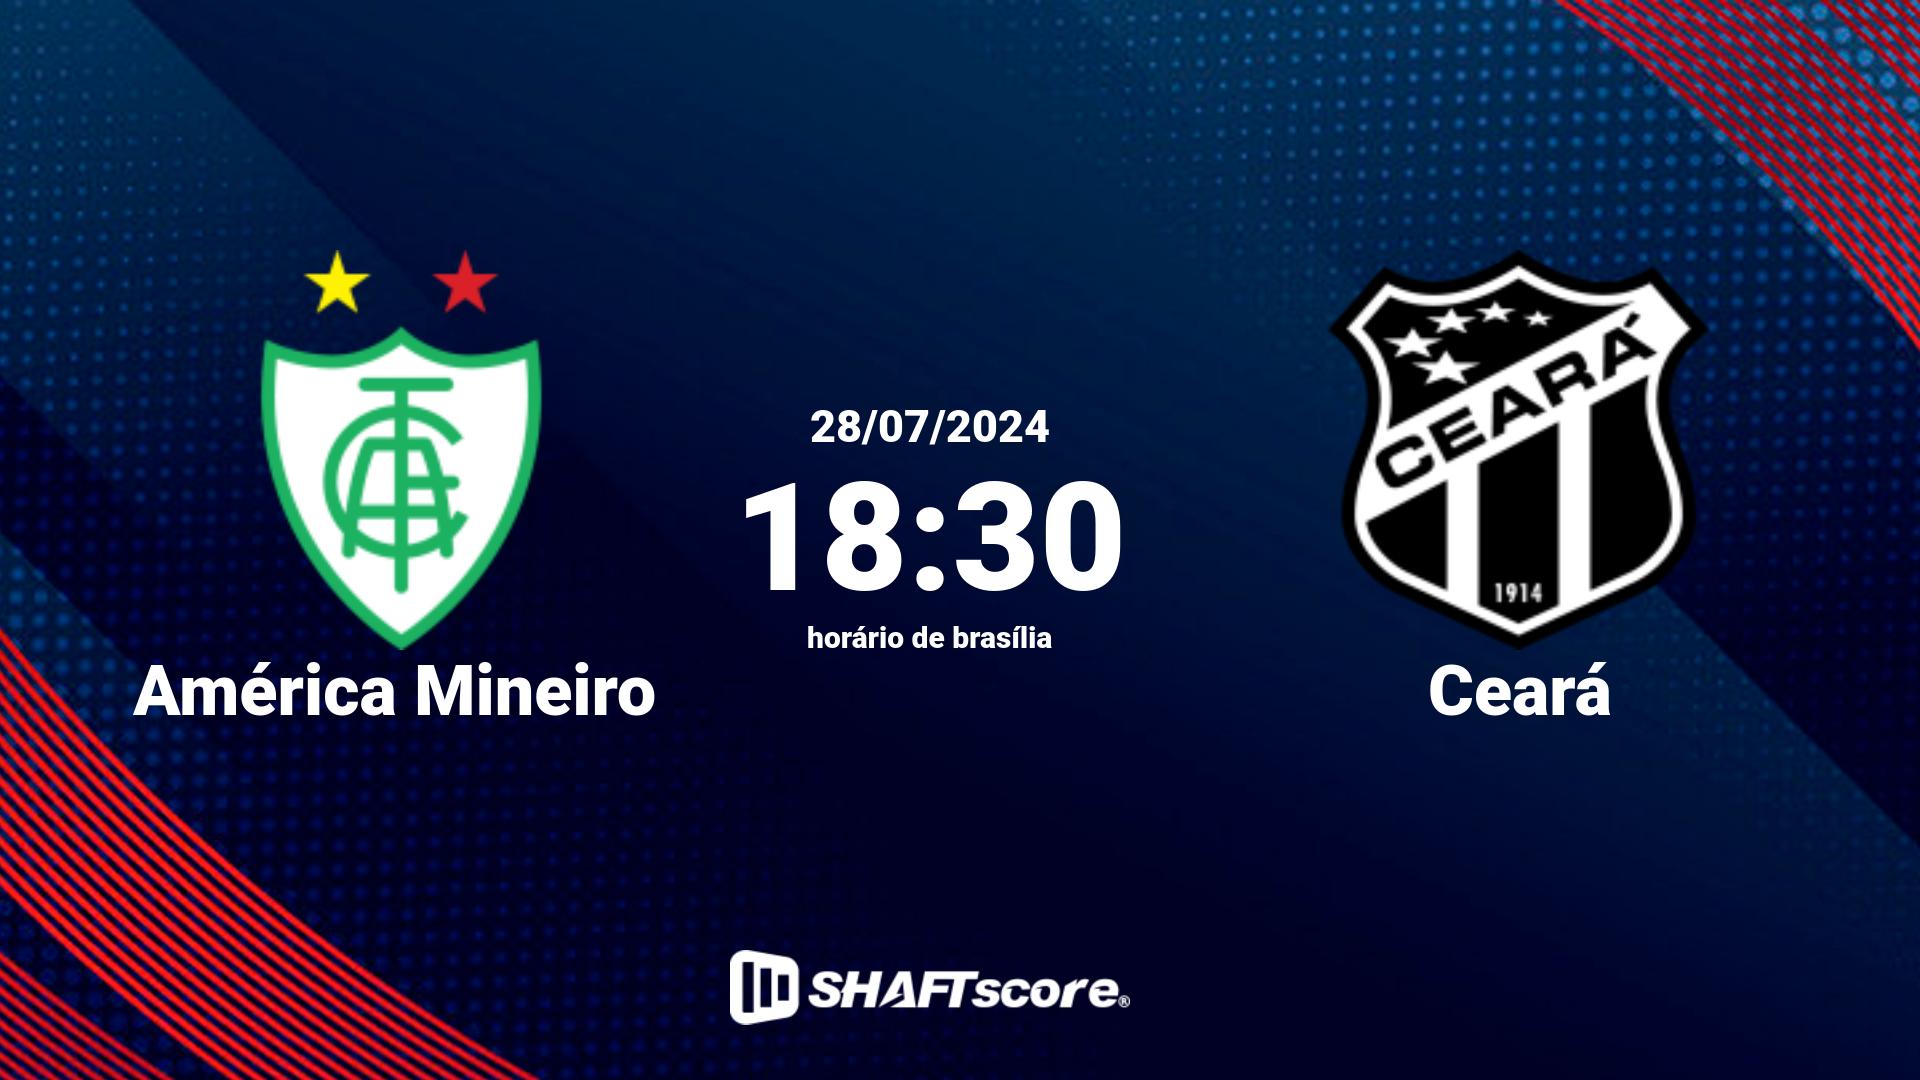 Estatísticas do jogo América Mineiro vs Ceará 28.07 18:30